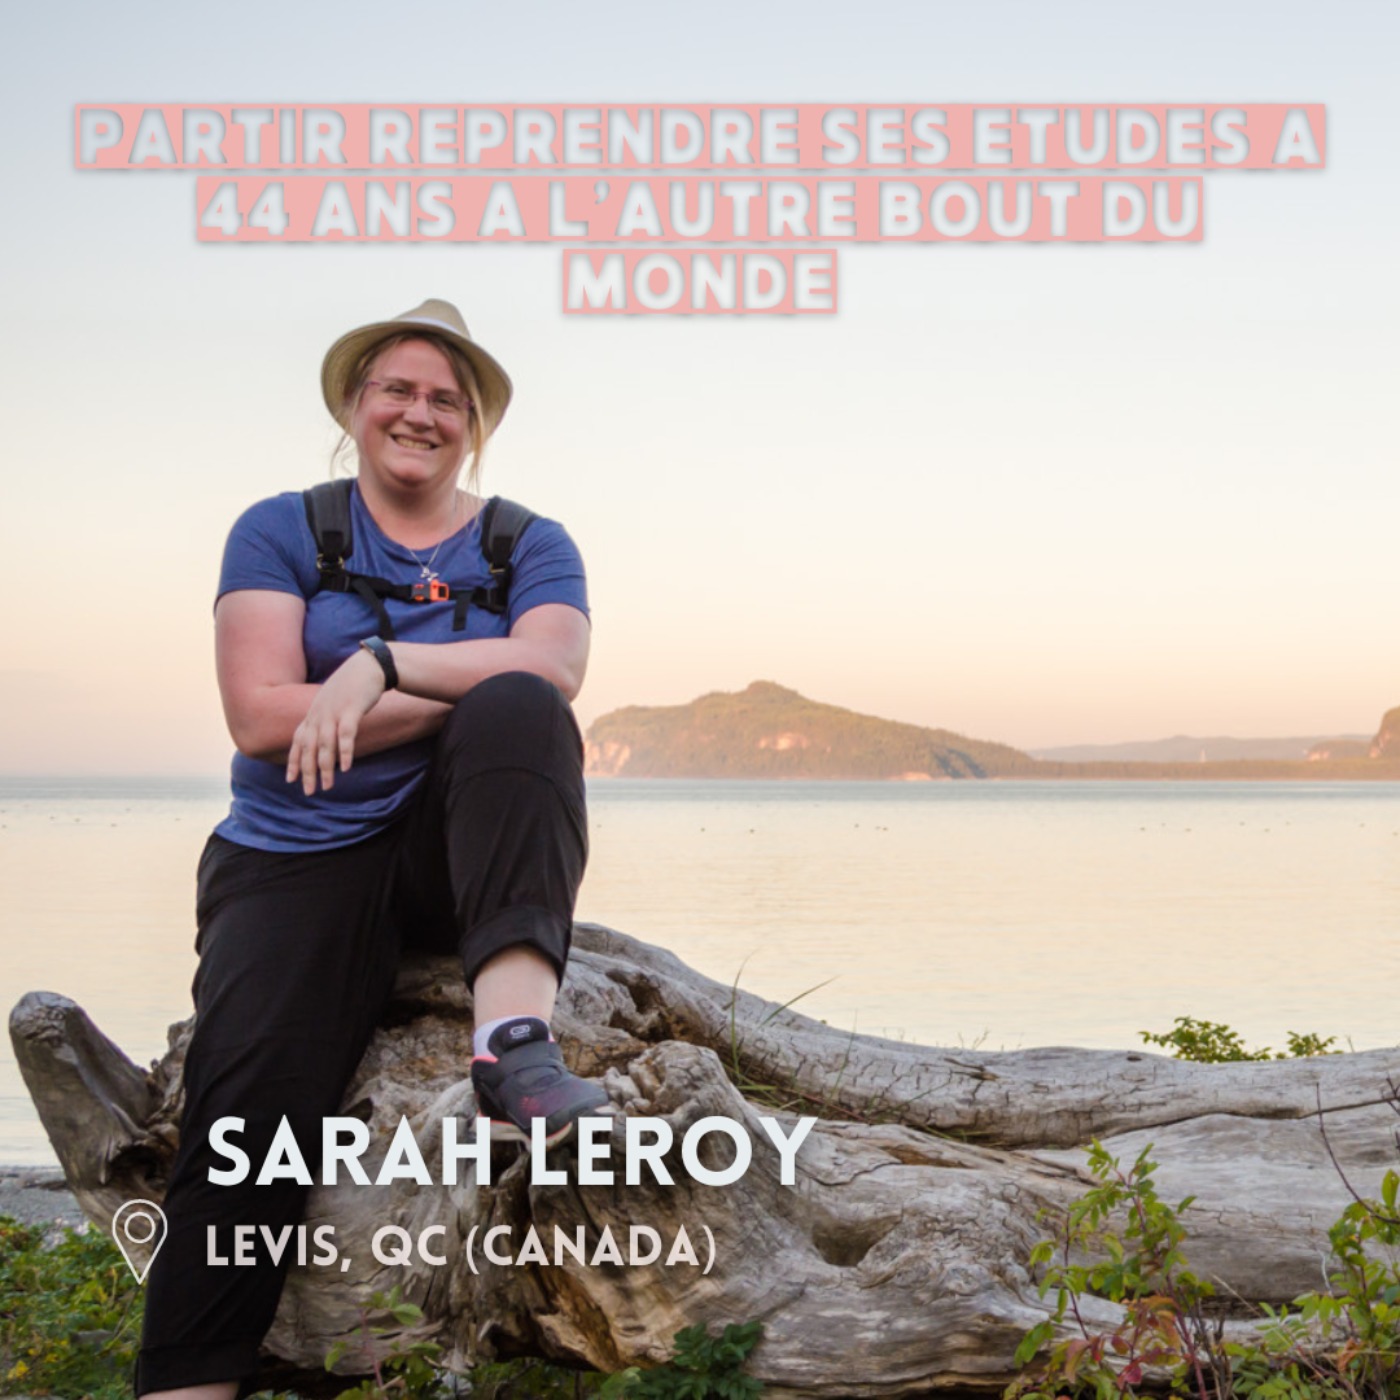 Sarah Leroy (Quebec) : Partir à 44 ans en solo pour reprendre ses études